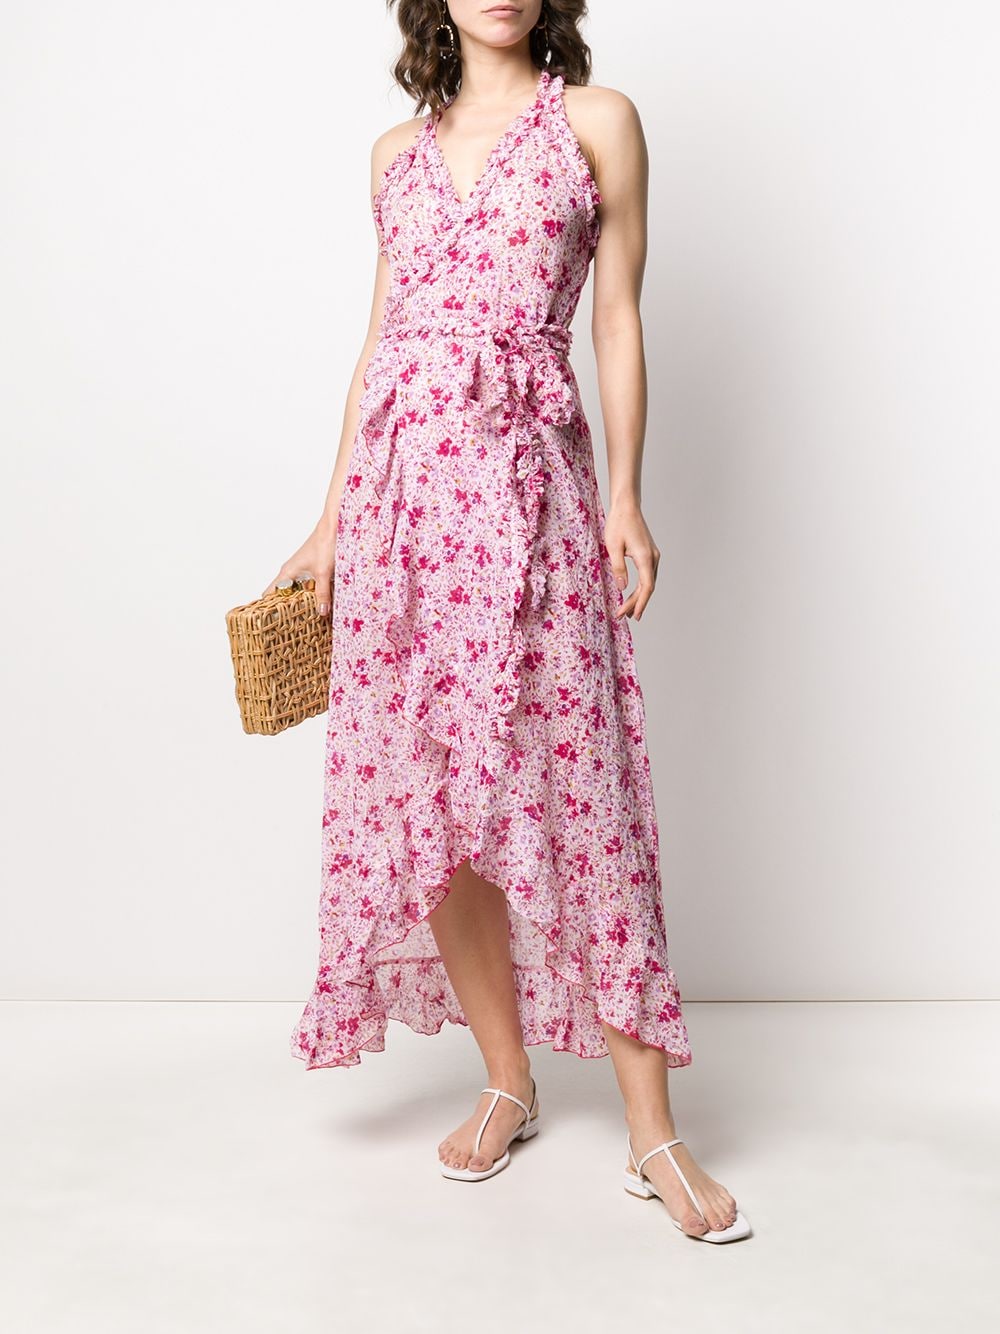 фото Poupette st barth платье с запахом и цветочным принтом